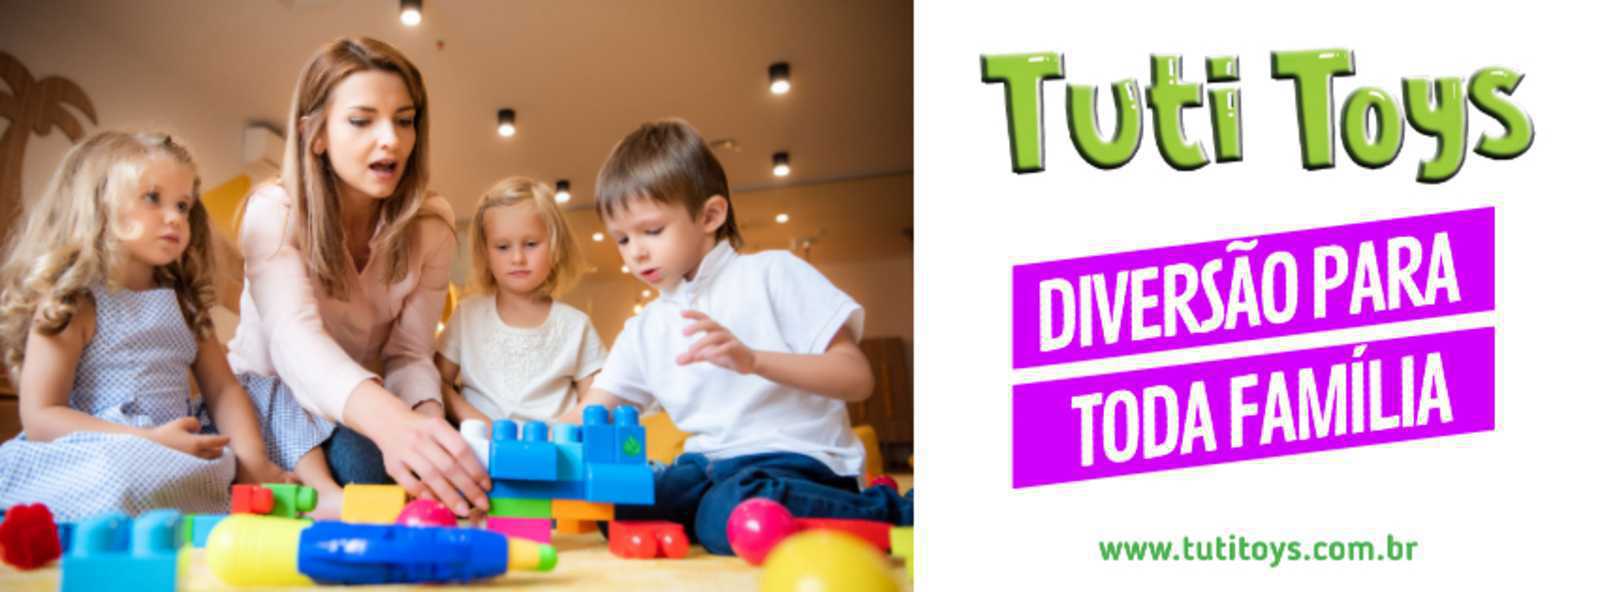 tuti toys banner 1